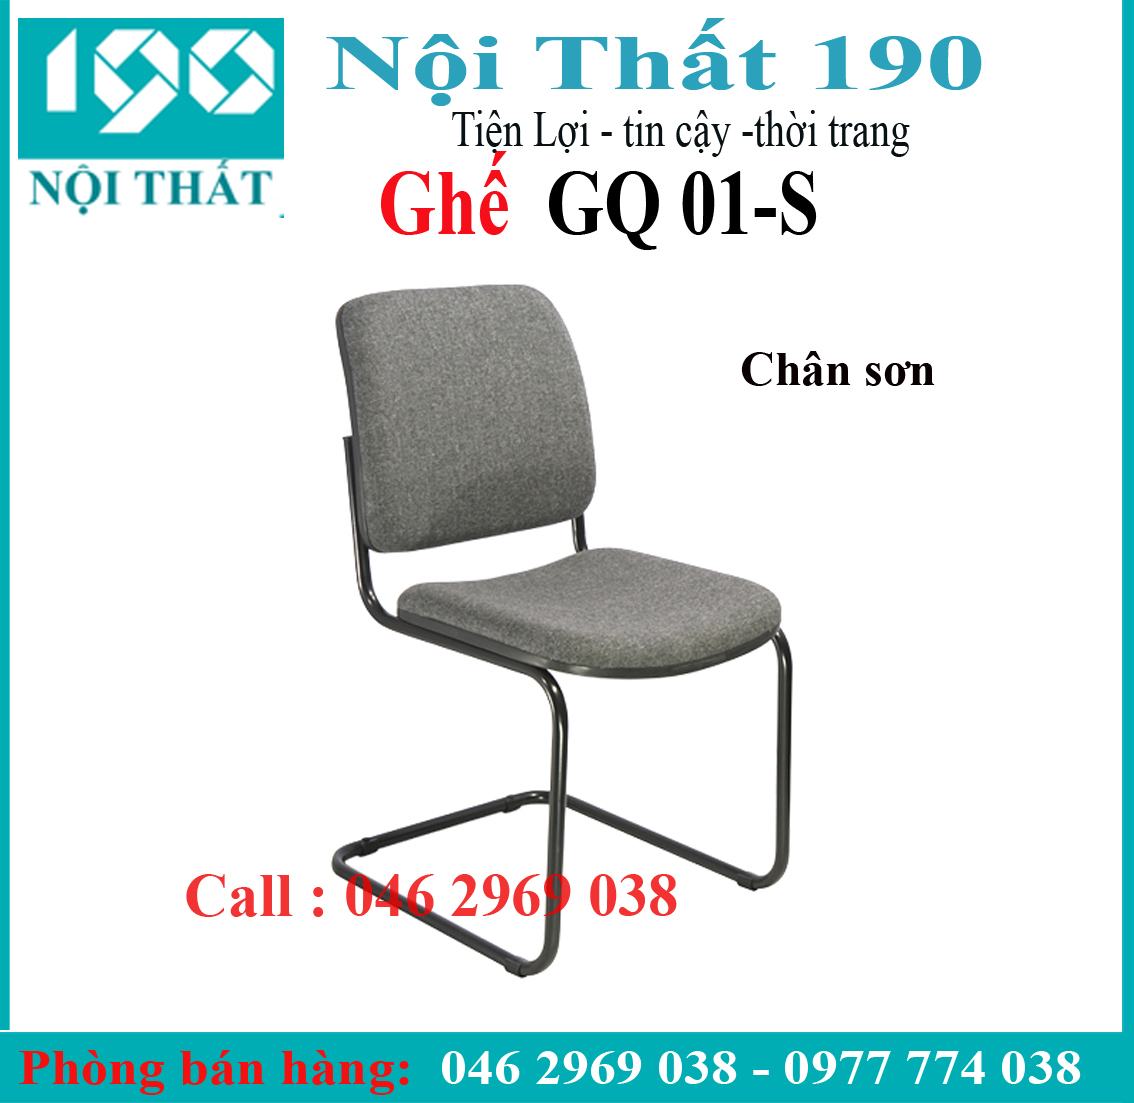 Ghế chân quỳ GQ01-S